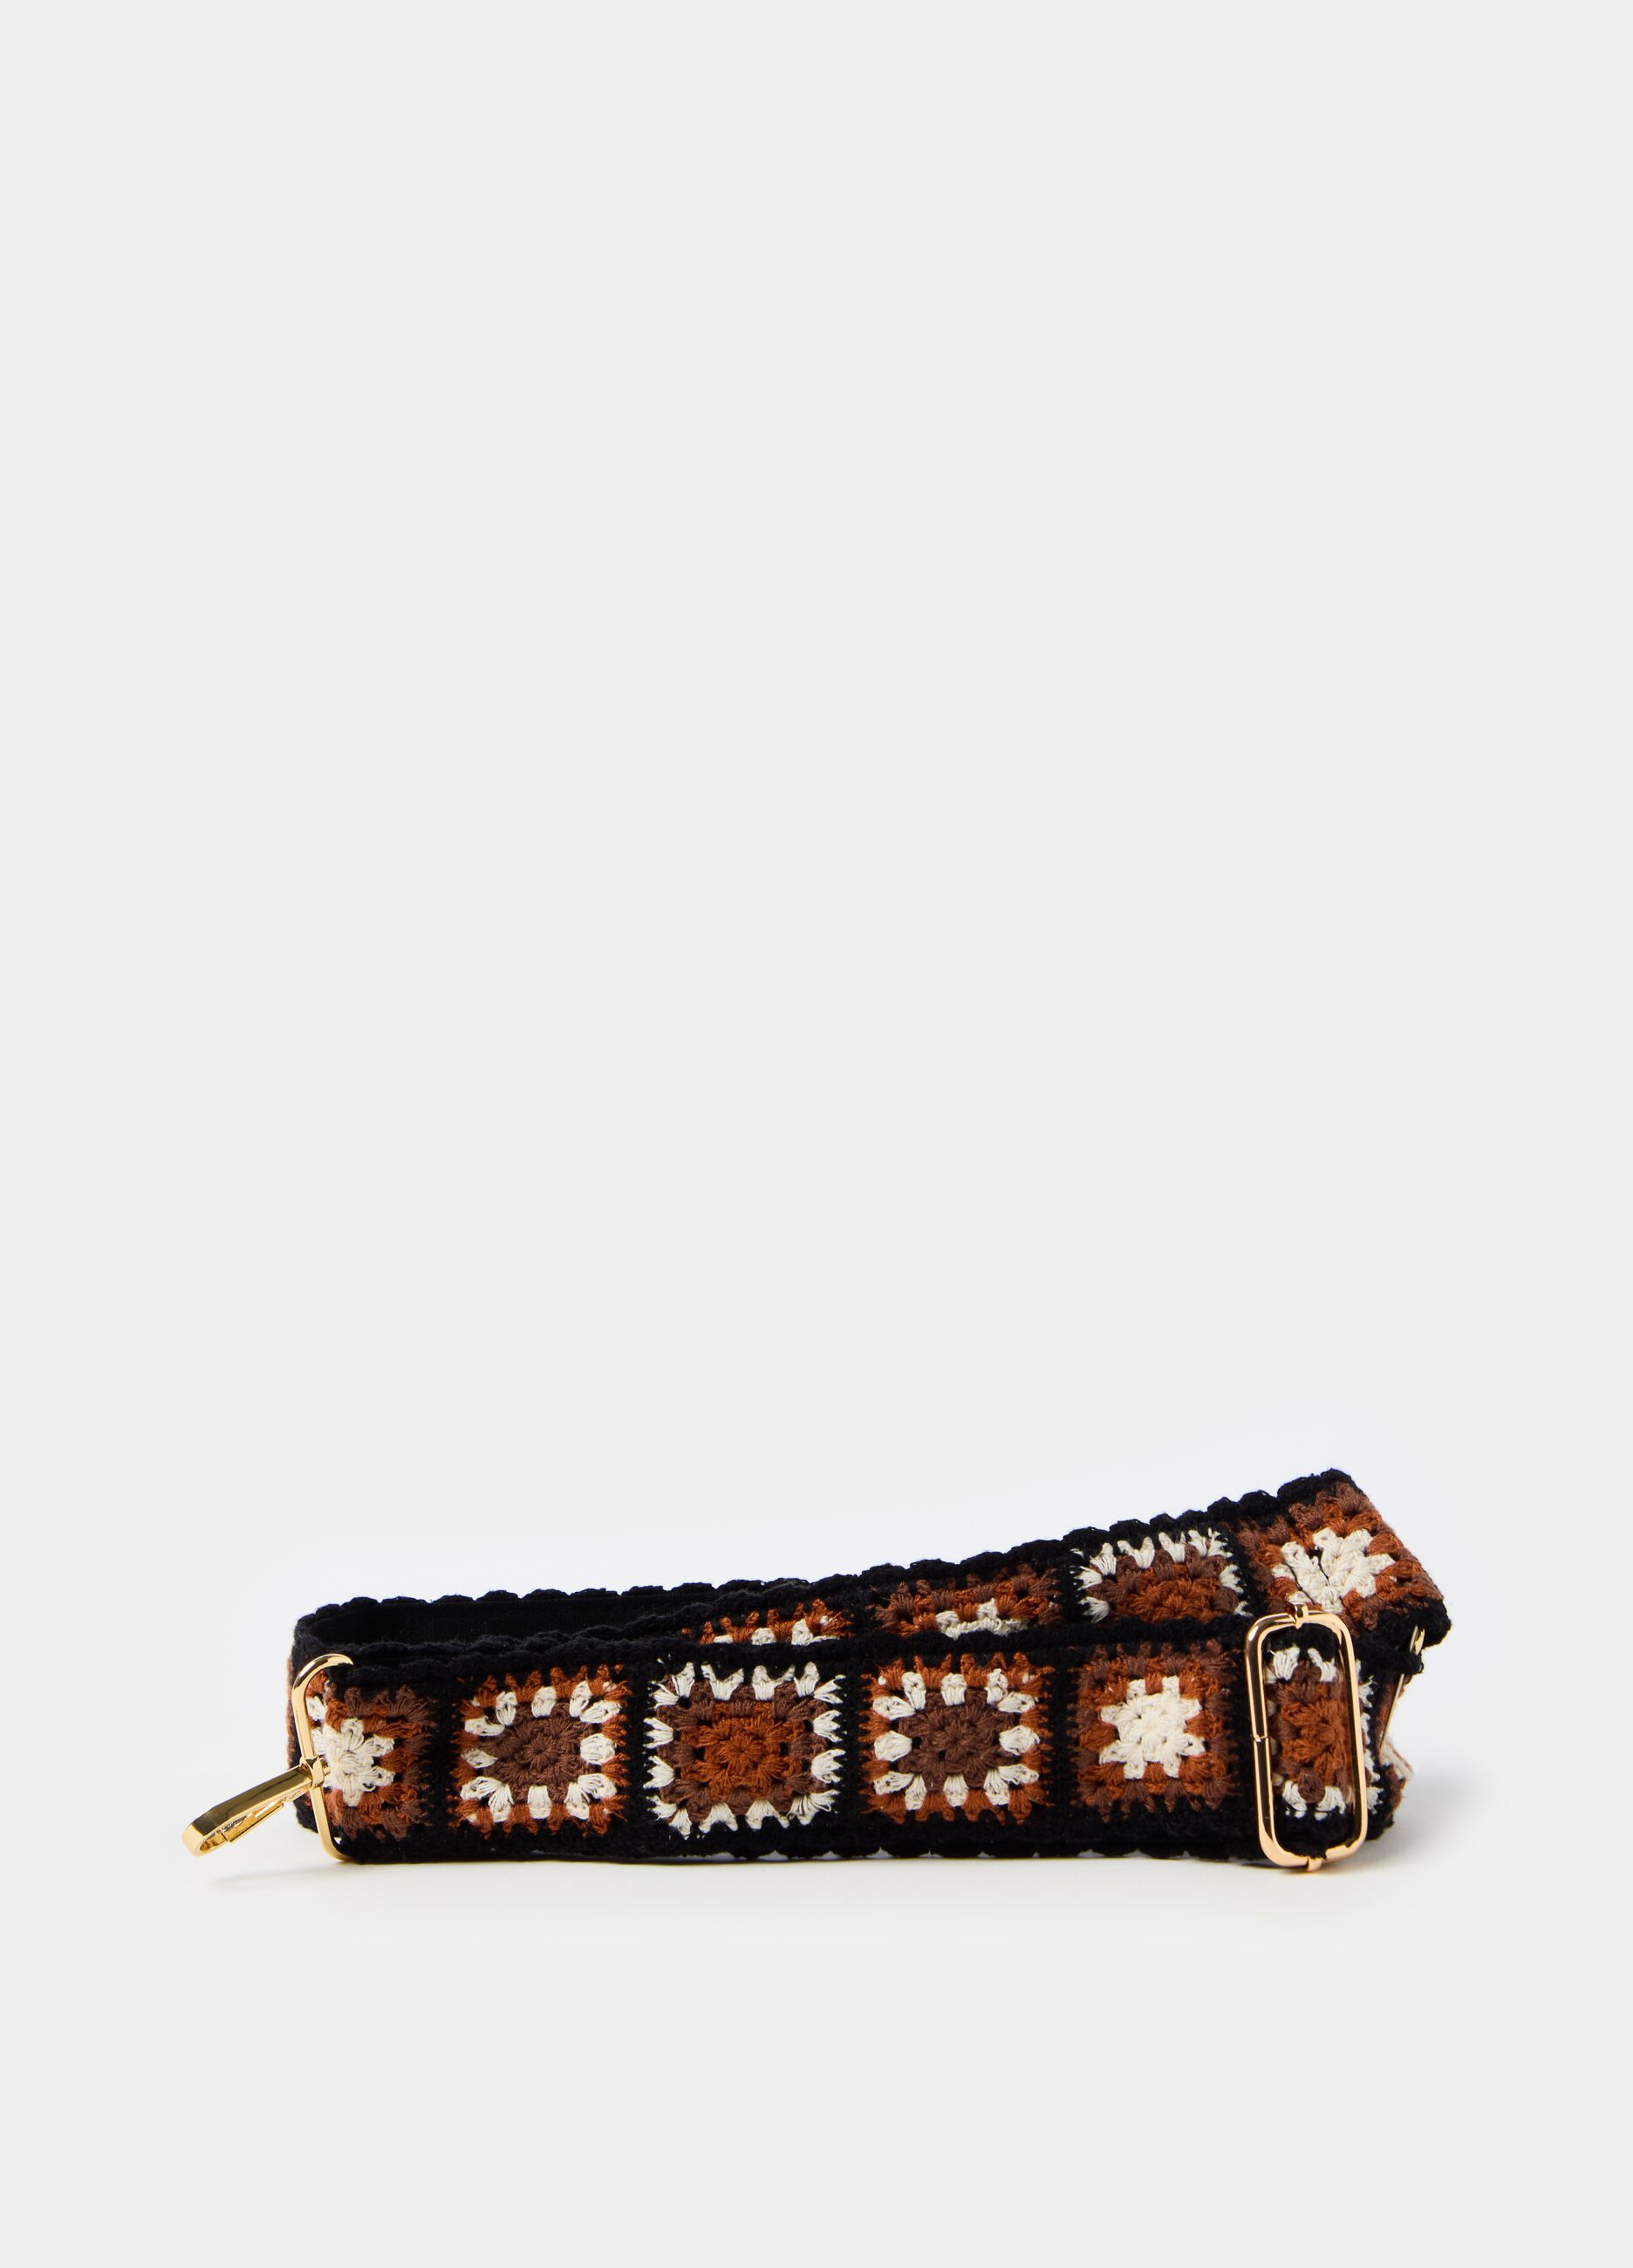 Shoulder strap for bag with crochet design